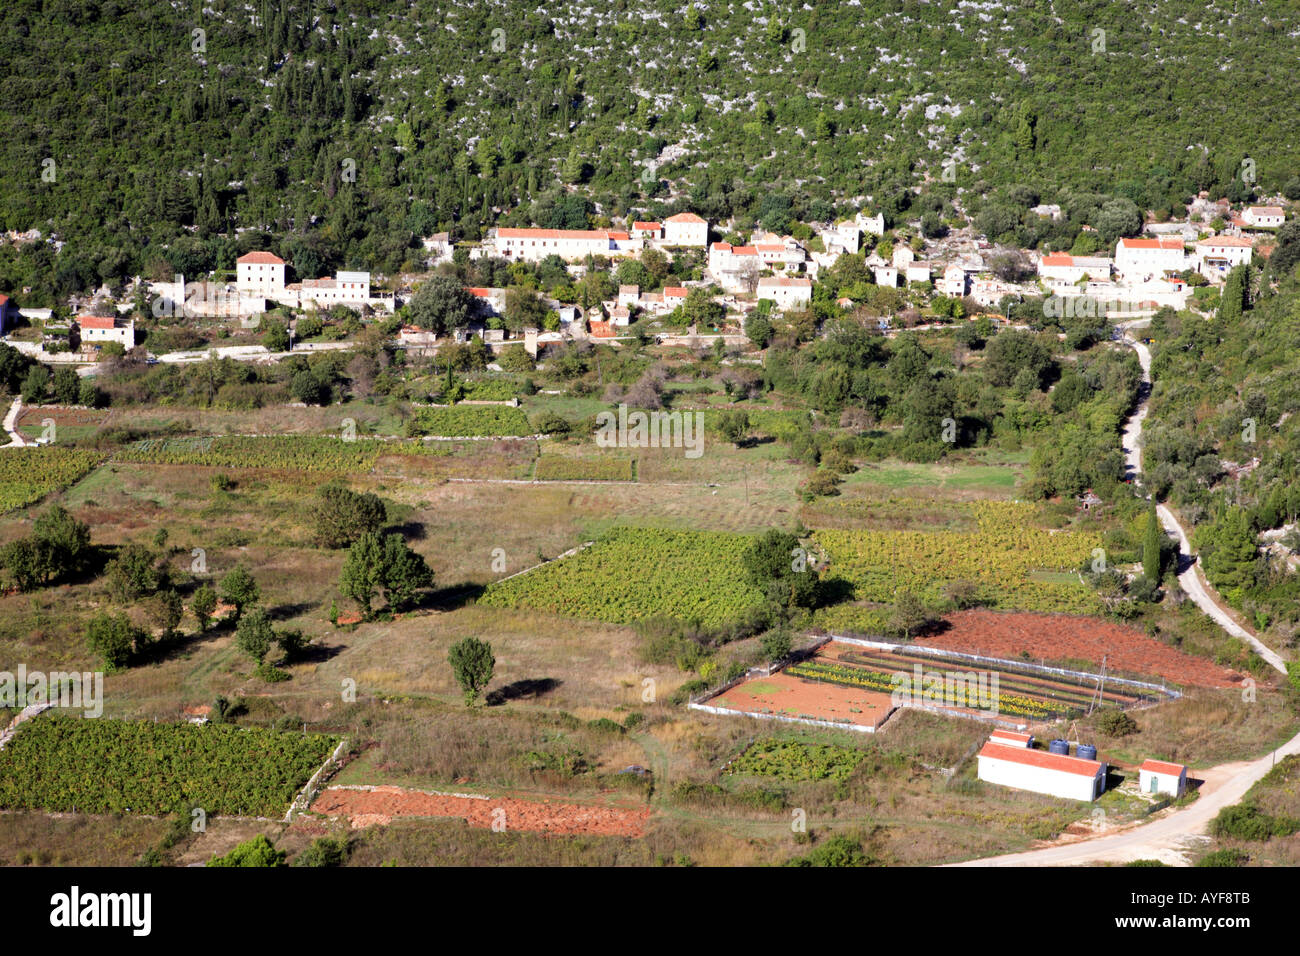 Blato, eines der größten Dörfer bekannt für seine hervorragenden Wein in Mljet, Kroatien Stockfoto